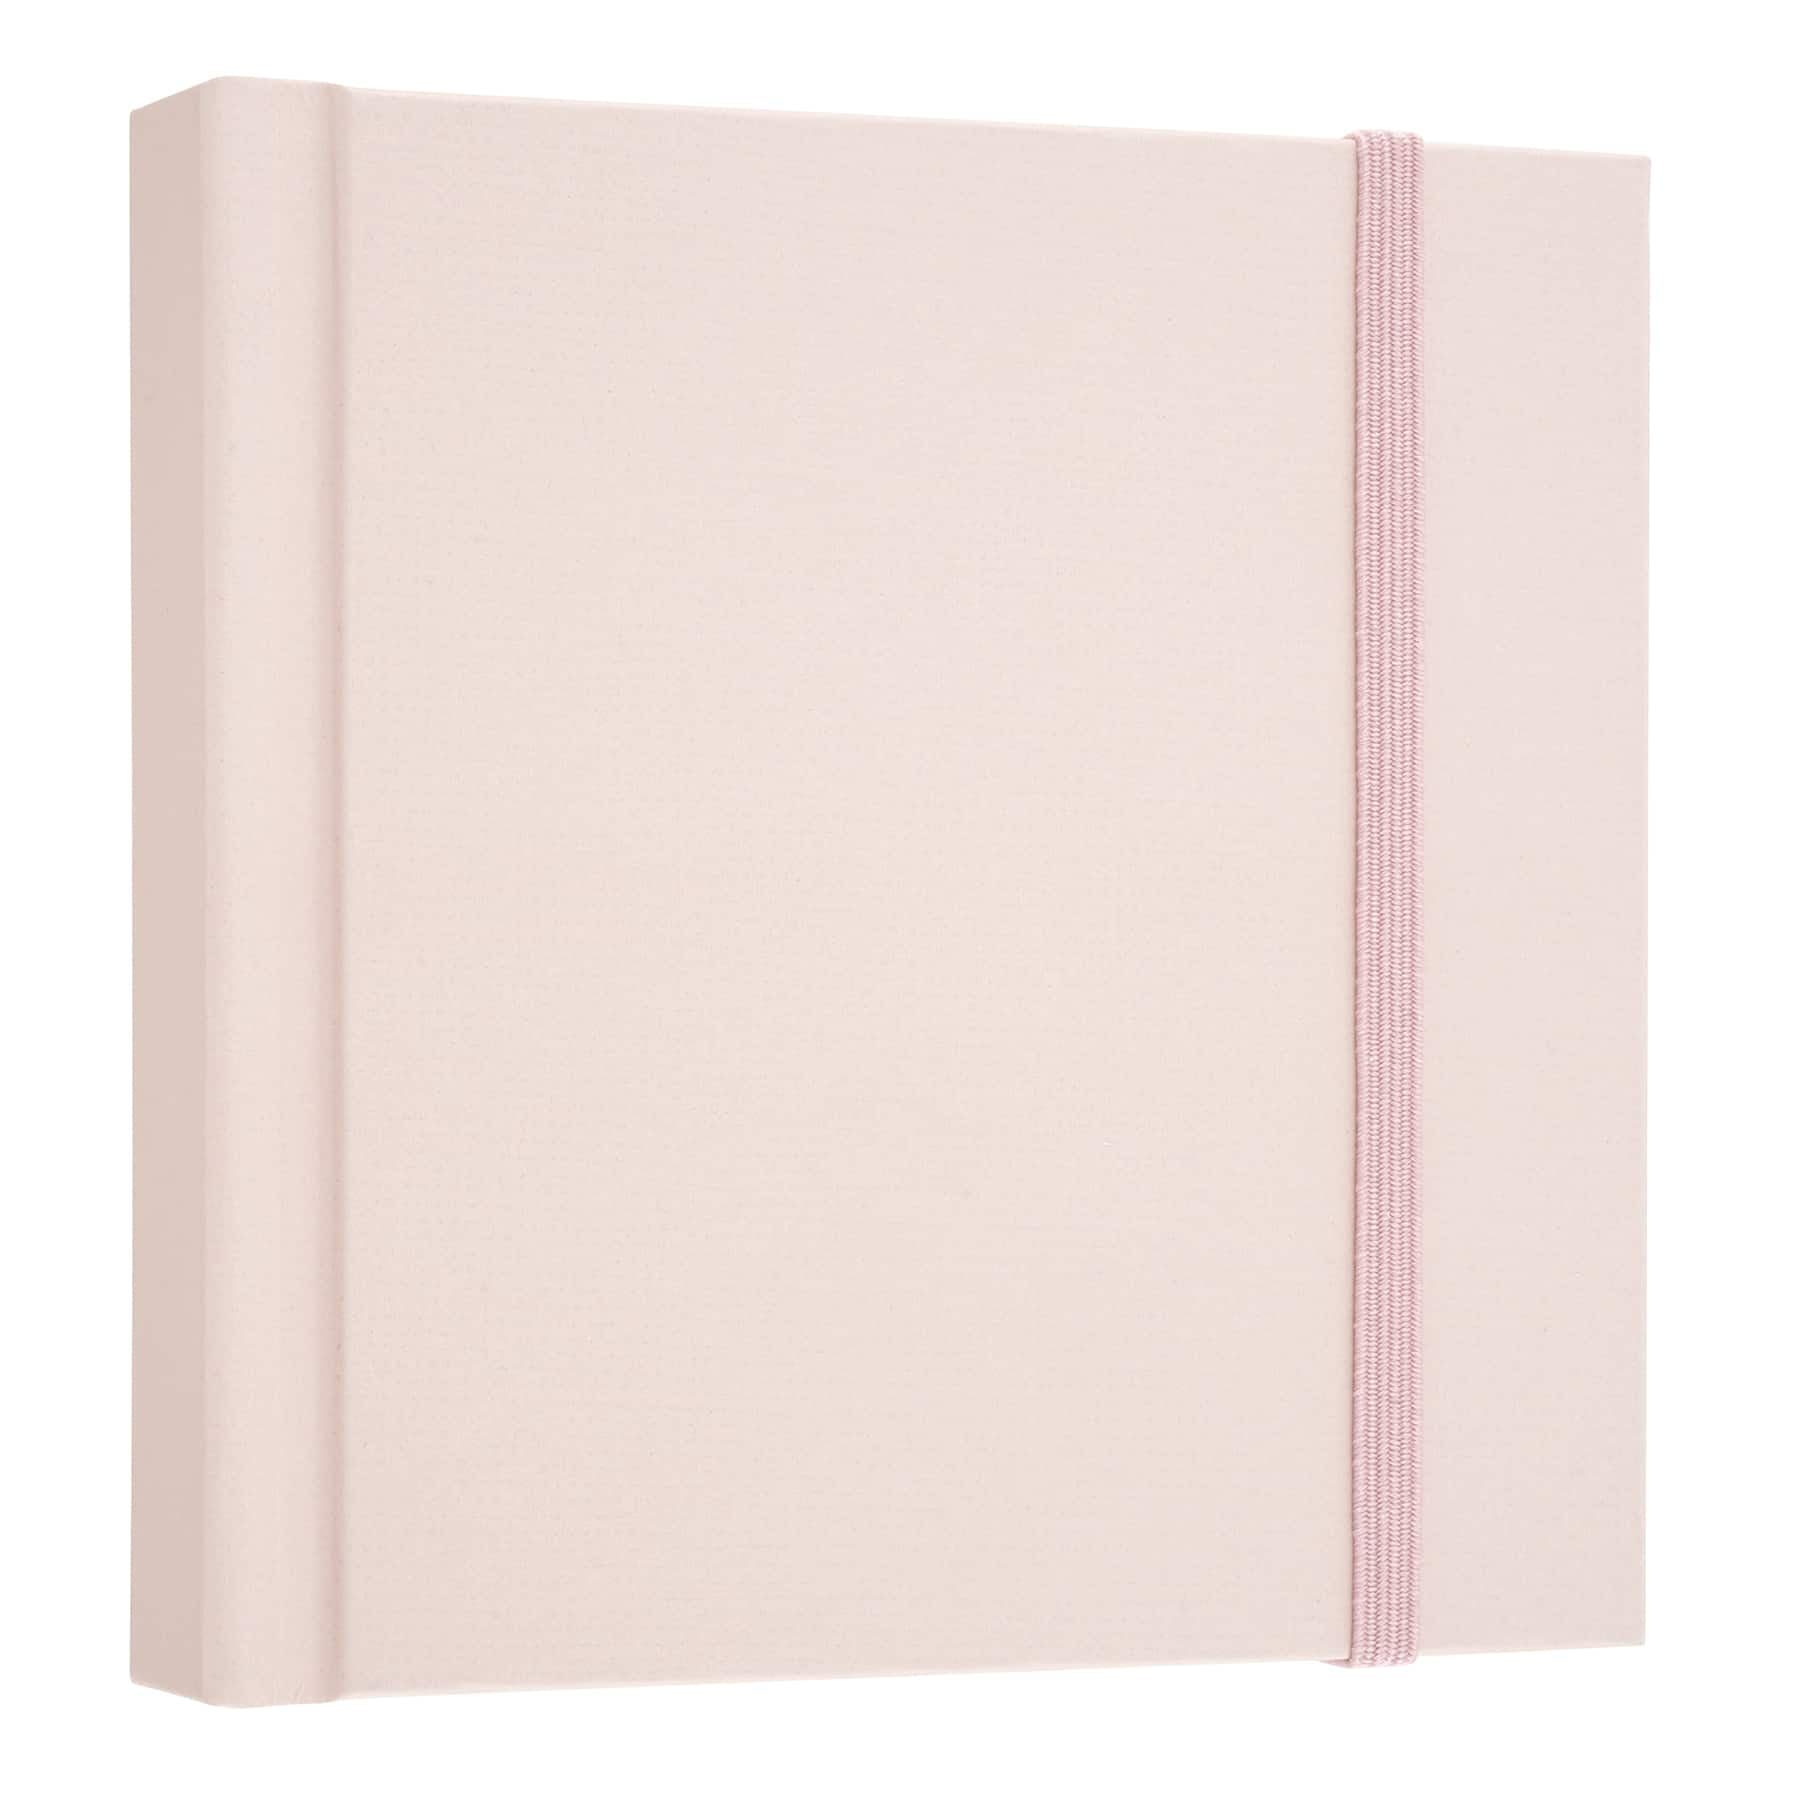 Sketchbook, Spiral-Bound Hardcover, Pink, 9 x 12” - Pack of 2